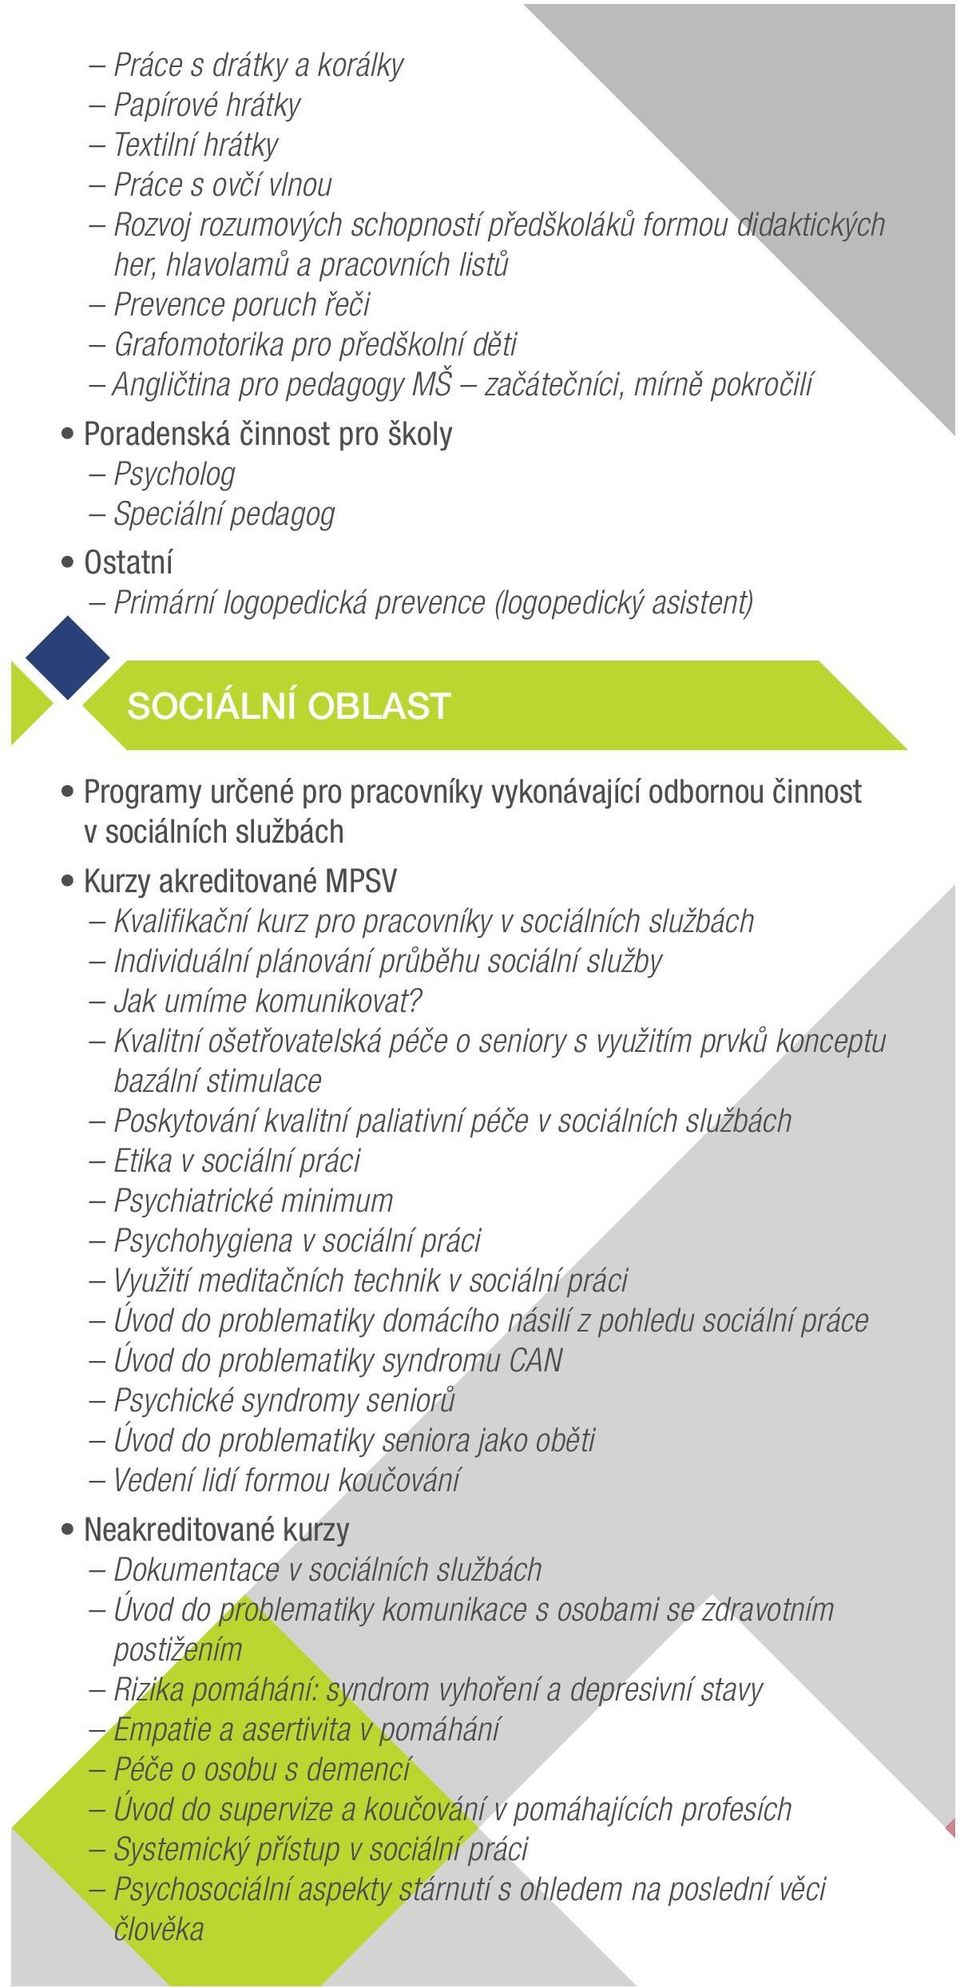 asistent) SOCIÁLNÍ OBLAST Programy určené pro pracovníky vykonávající odbornou činnost v sociálních službách Kurzy akreditované MPSV Kvalifikační kurz pro pracovníky v sociálních službách